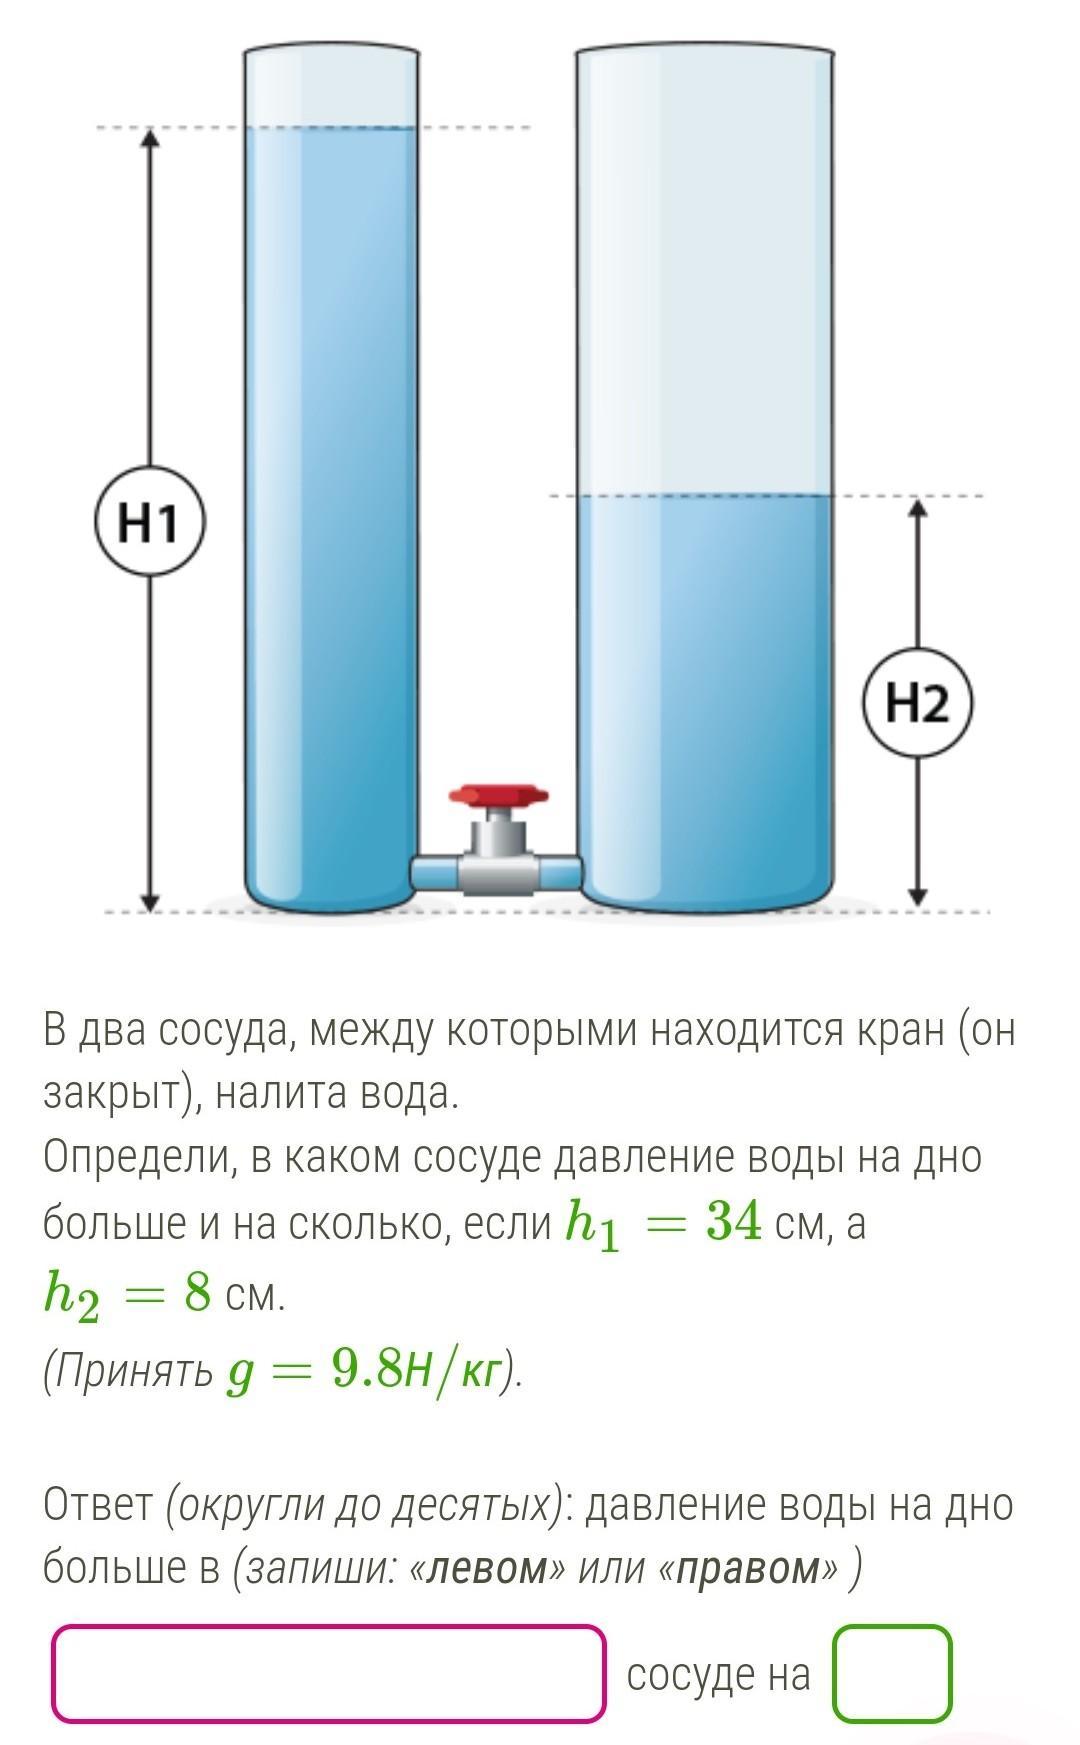 В цилиндрические сообщающиеся сосуды налита вода. Давление воды в сосуде. Сосуд с водой. Вода в сосуде и давление воды на дно. В два сосуда налита вода.